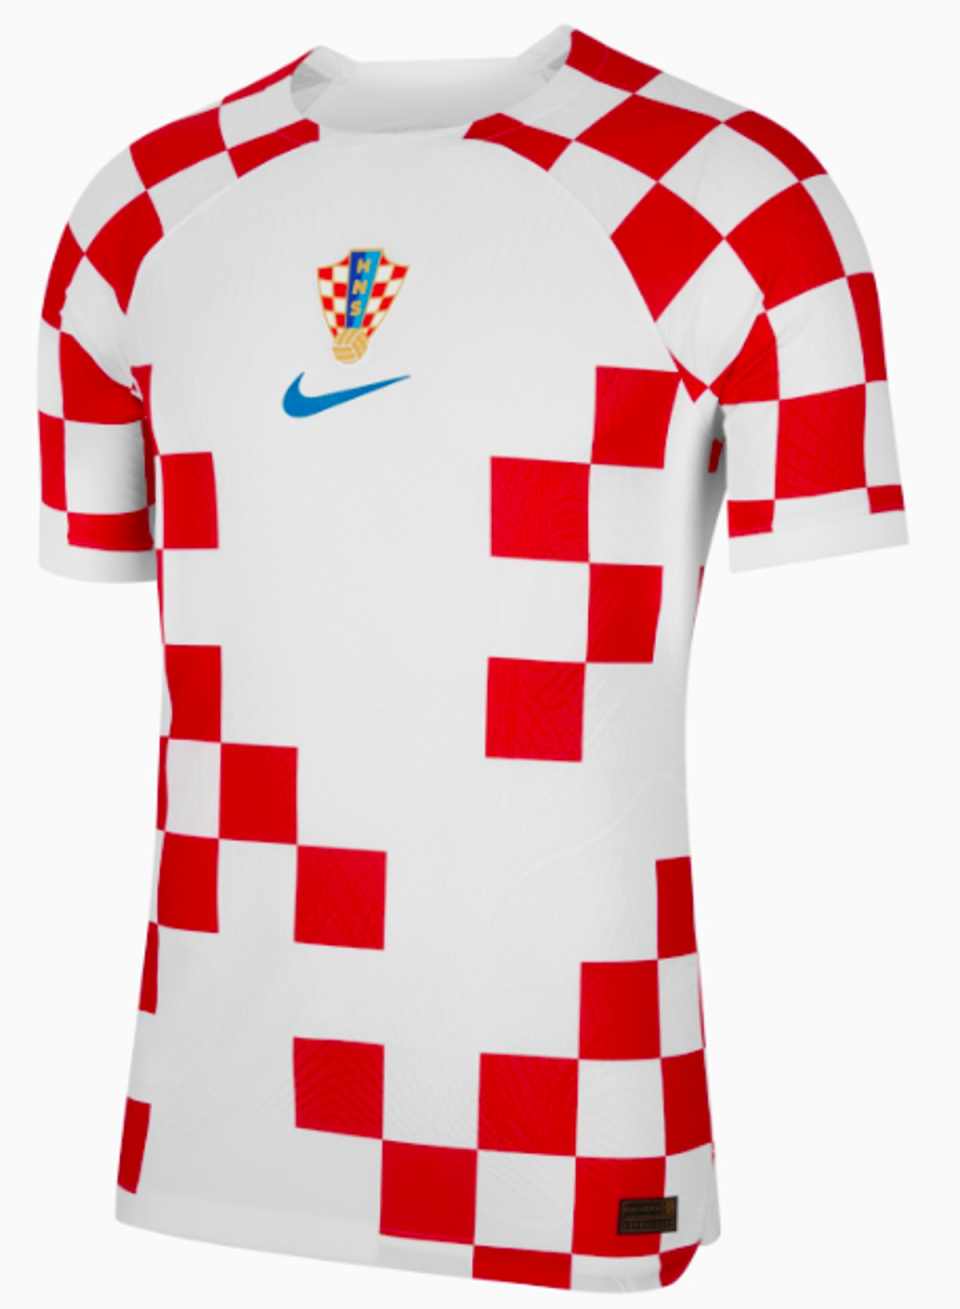 Croatia home (Nike)